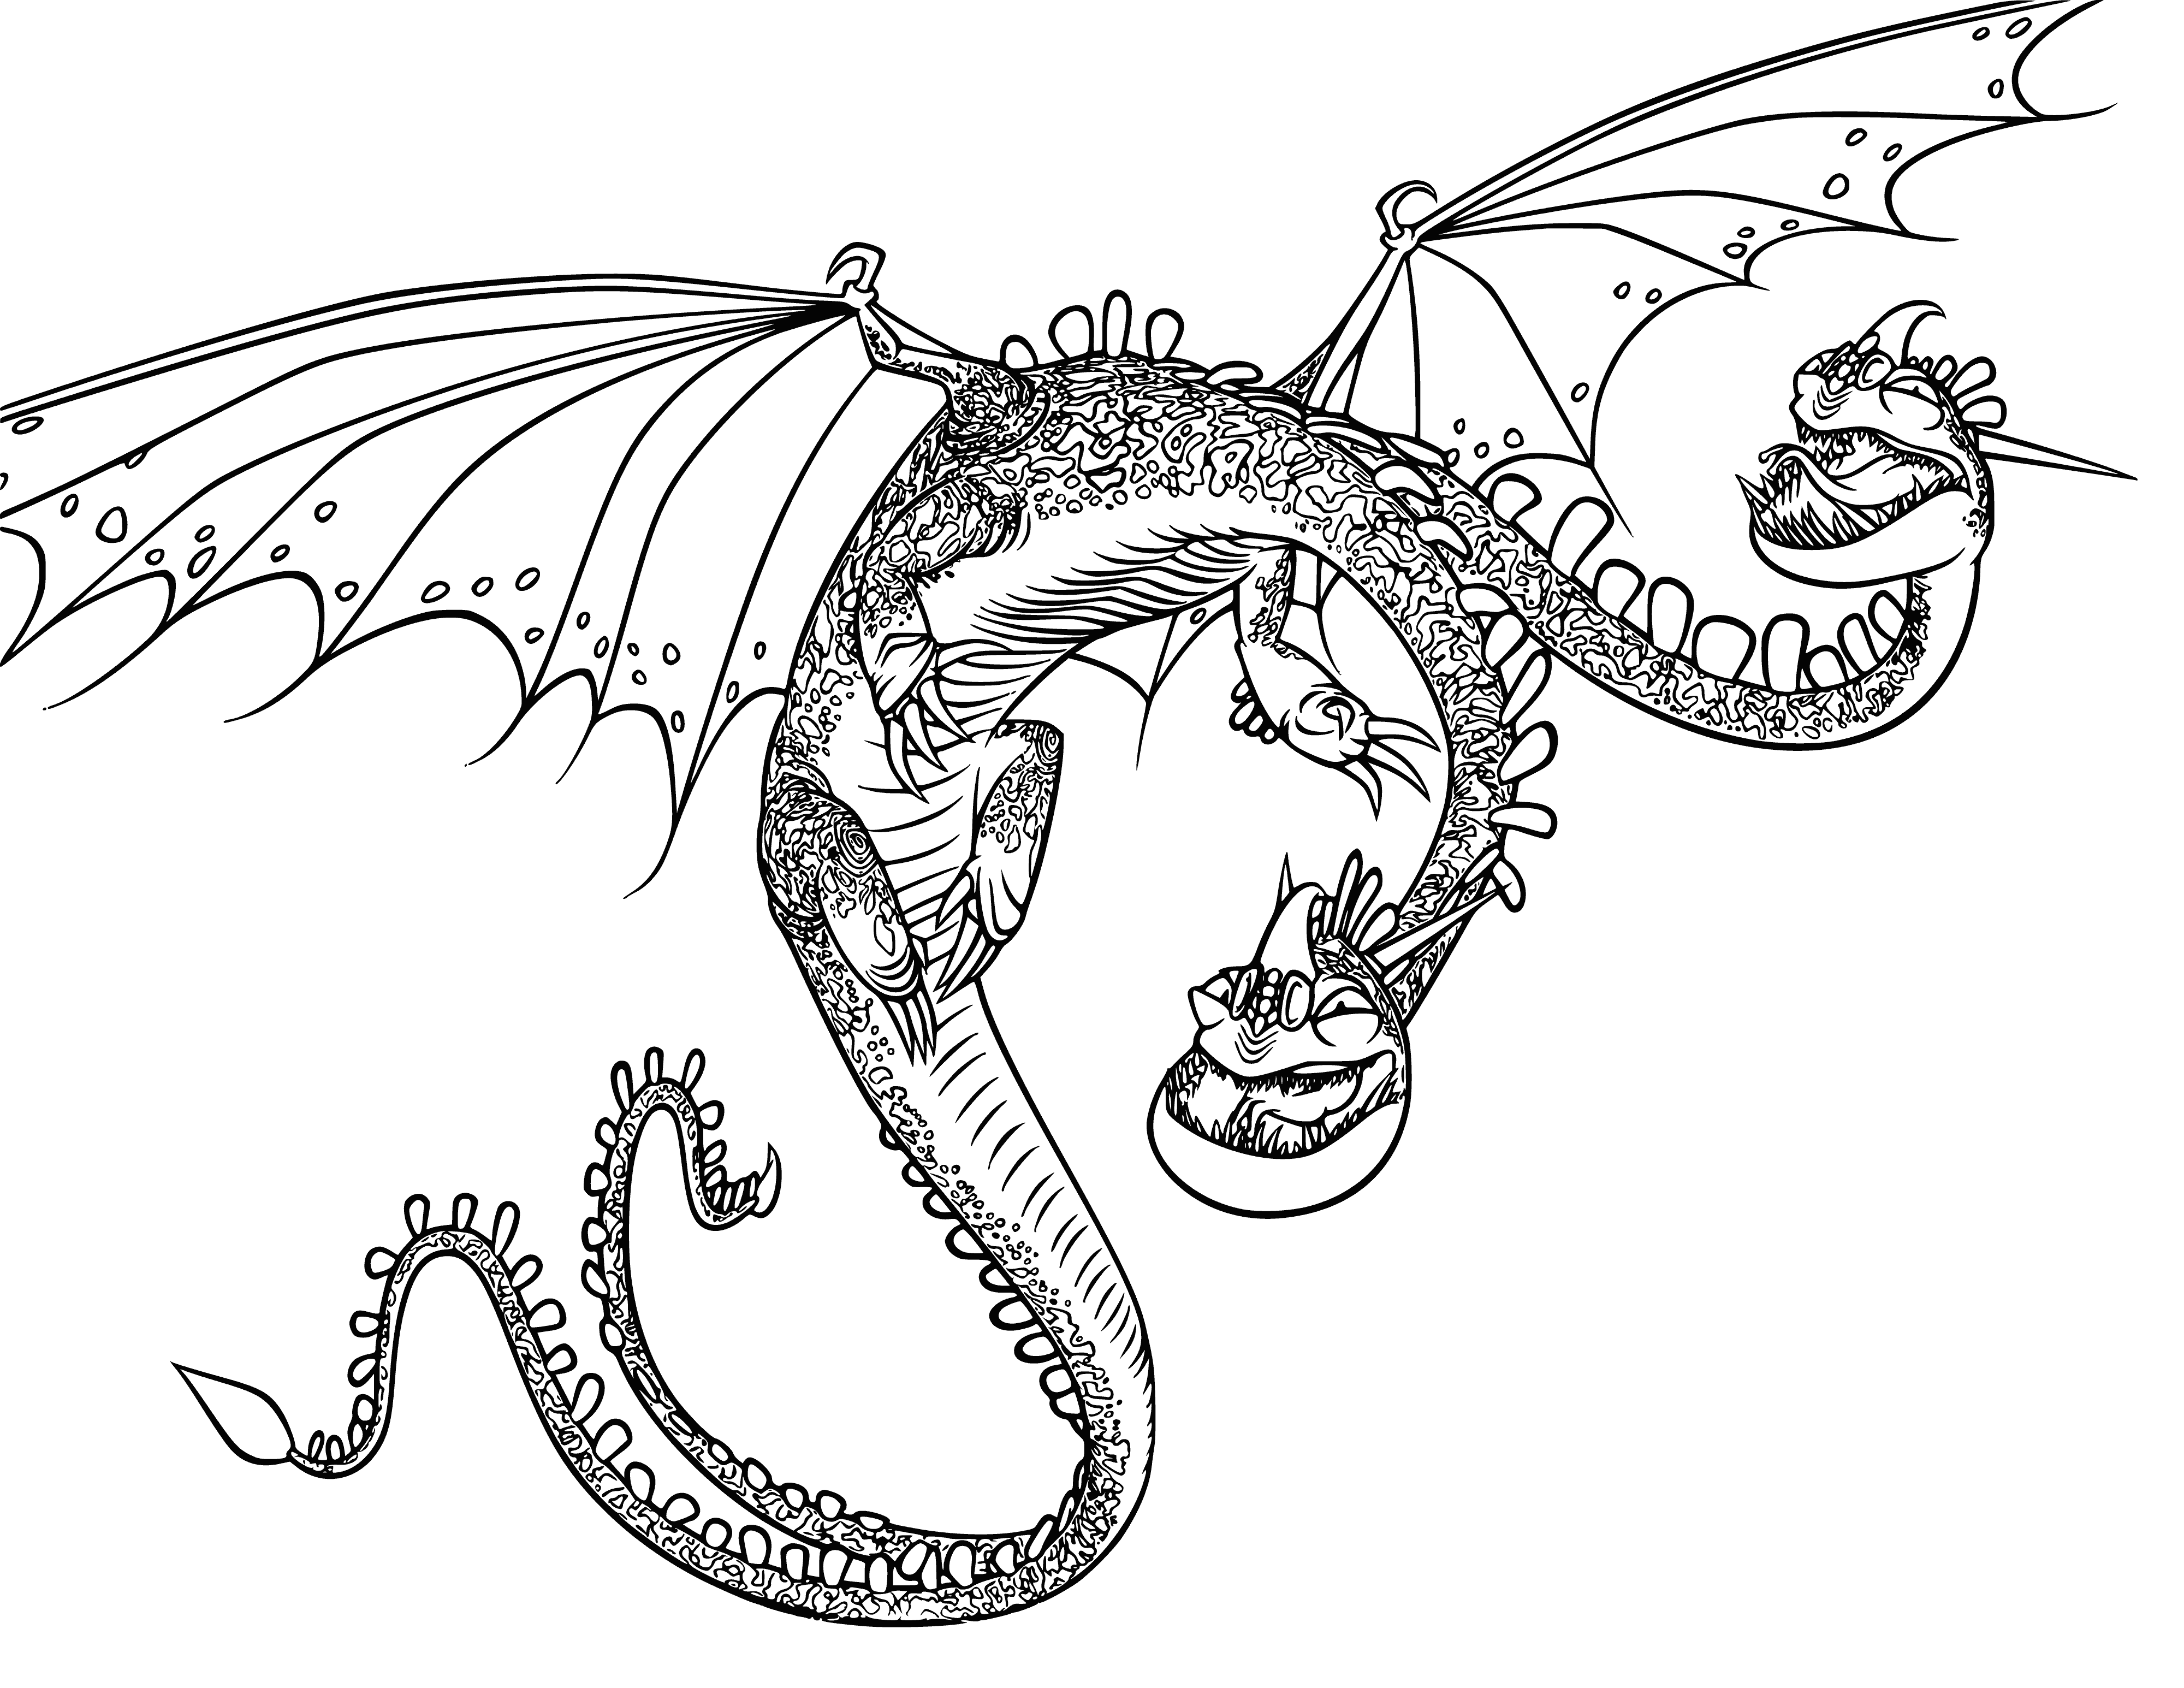 Раскраски Драконов распечатать или скачать бесплатно в формате PDF